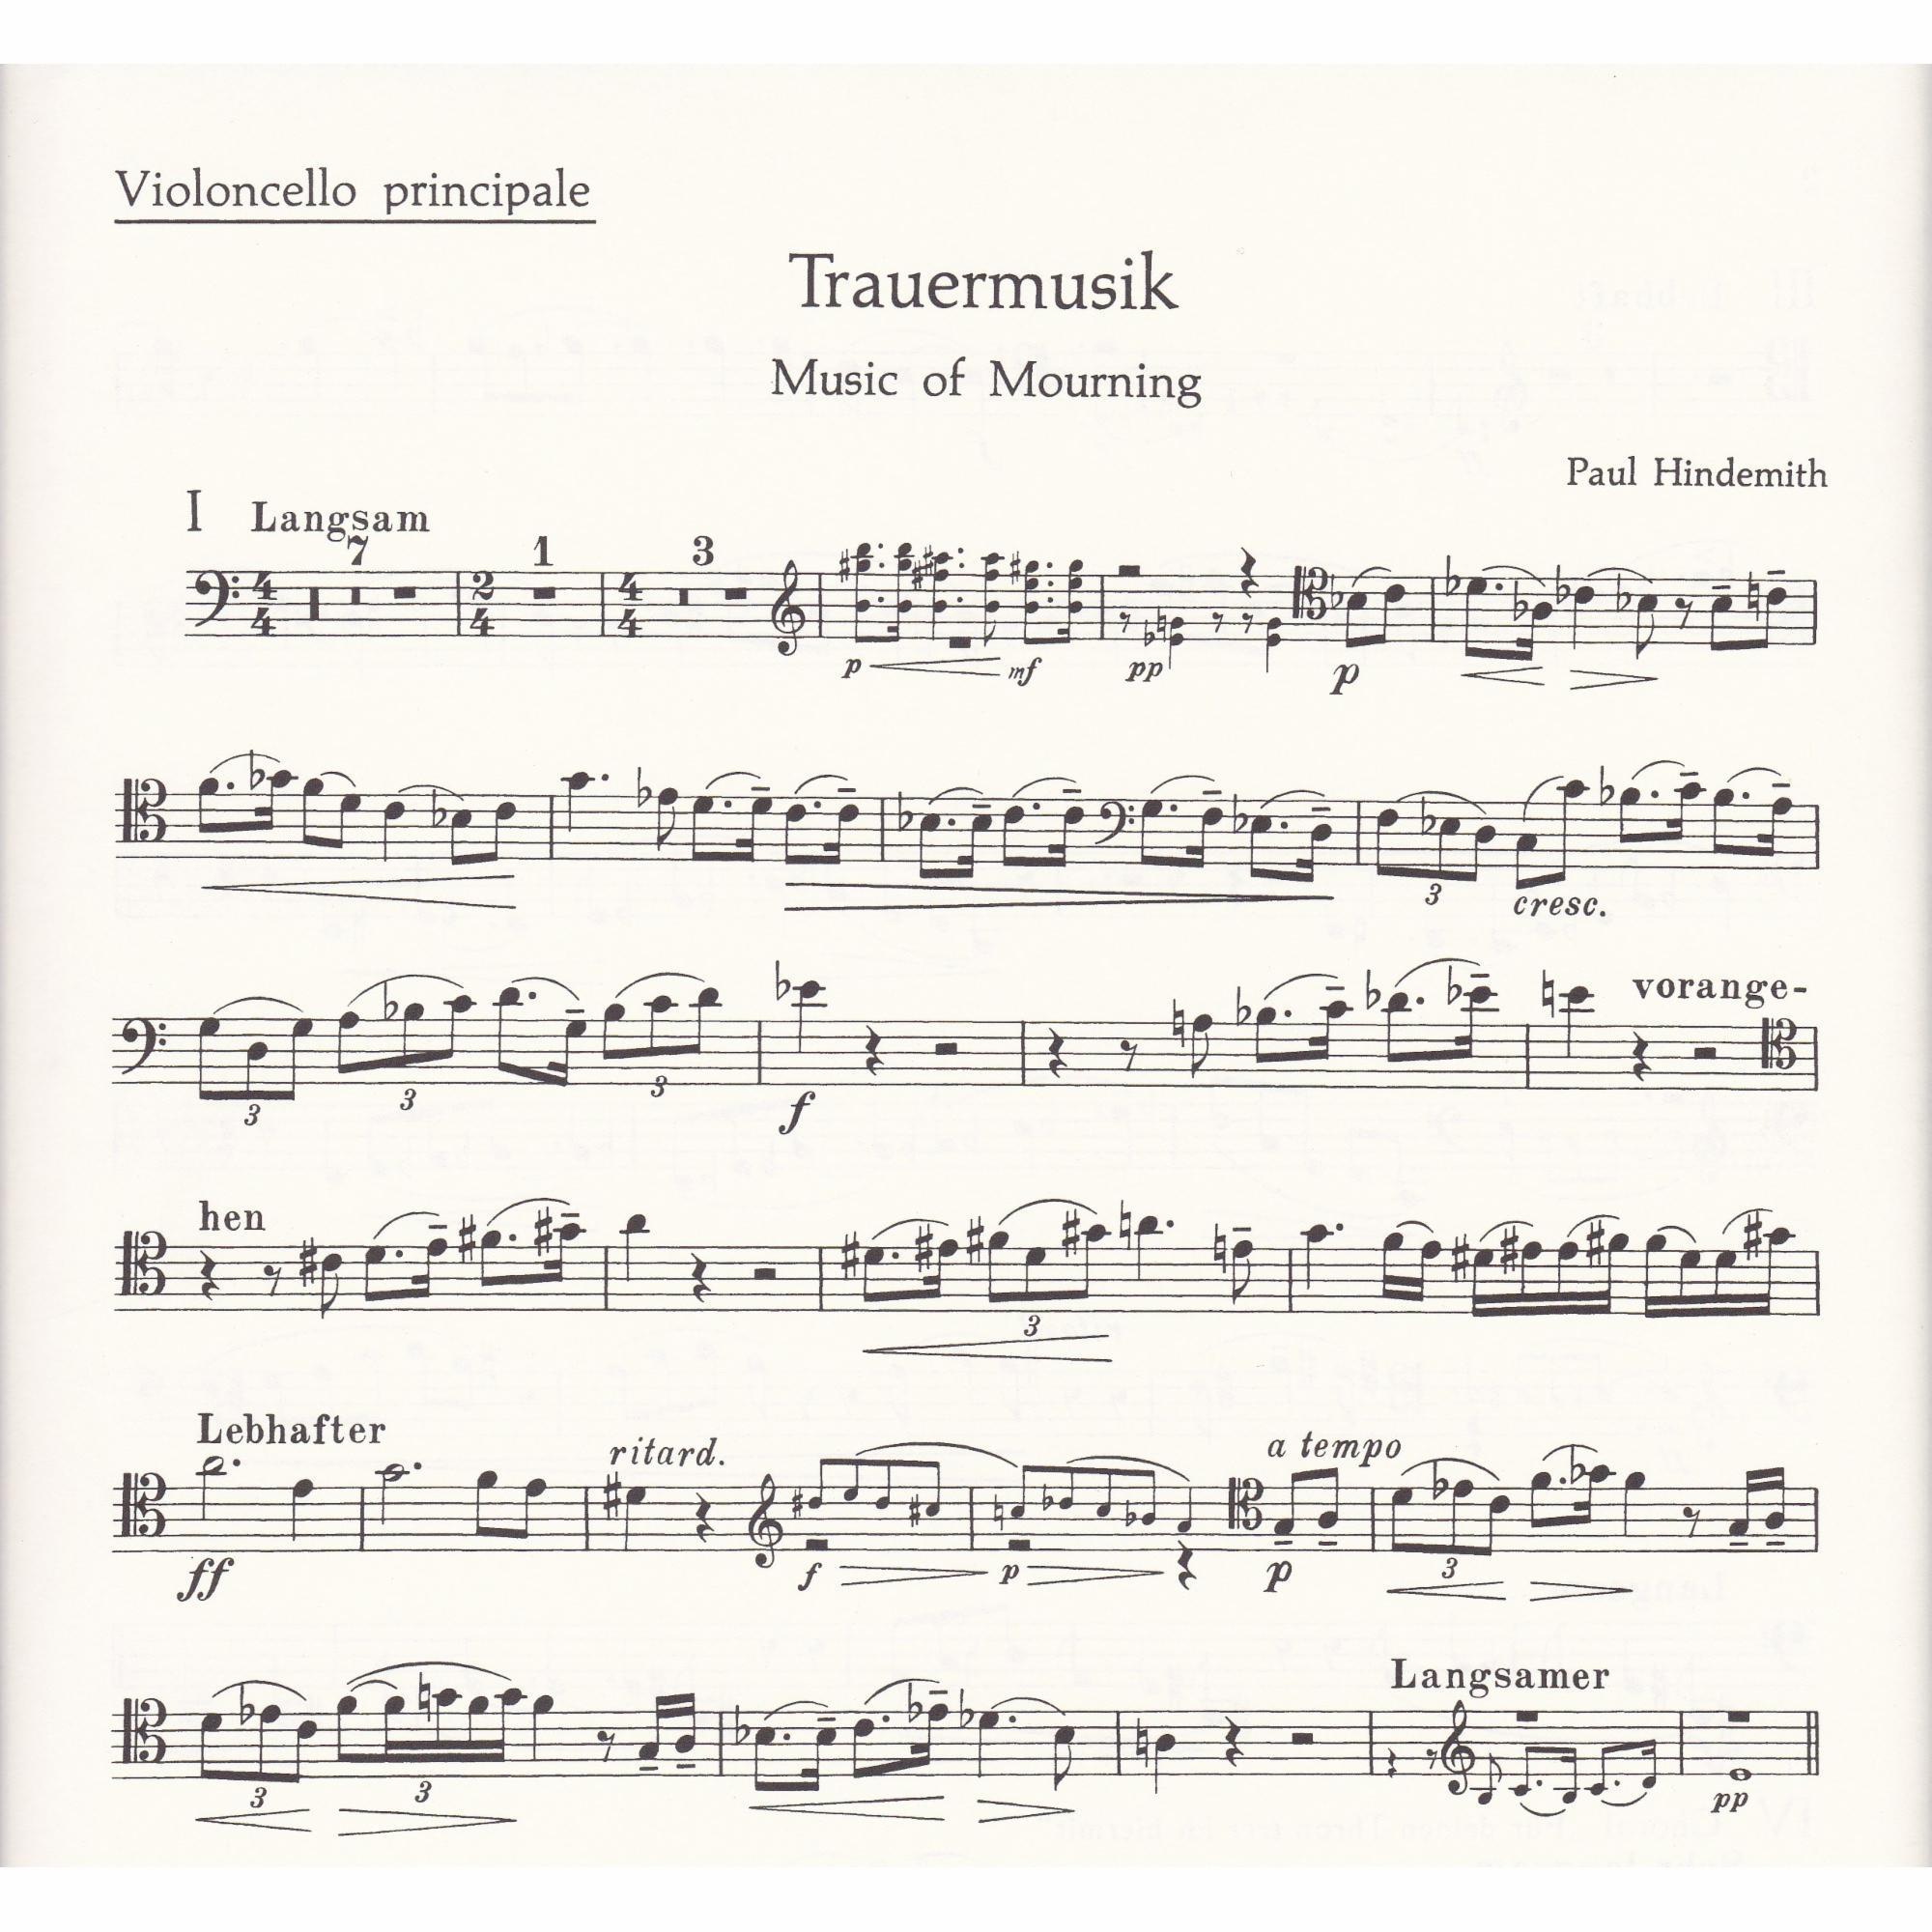 Trauermusik for Viola, Cello, or Violin, and Piano